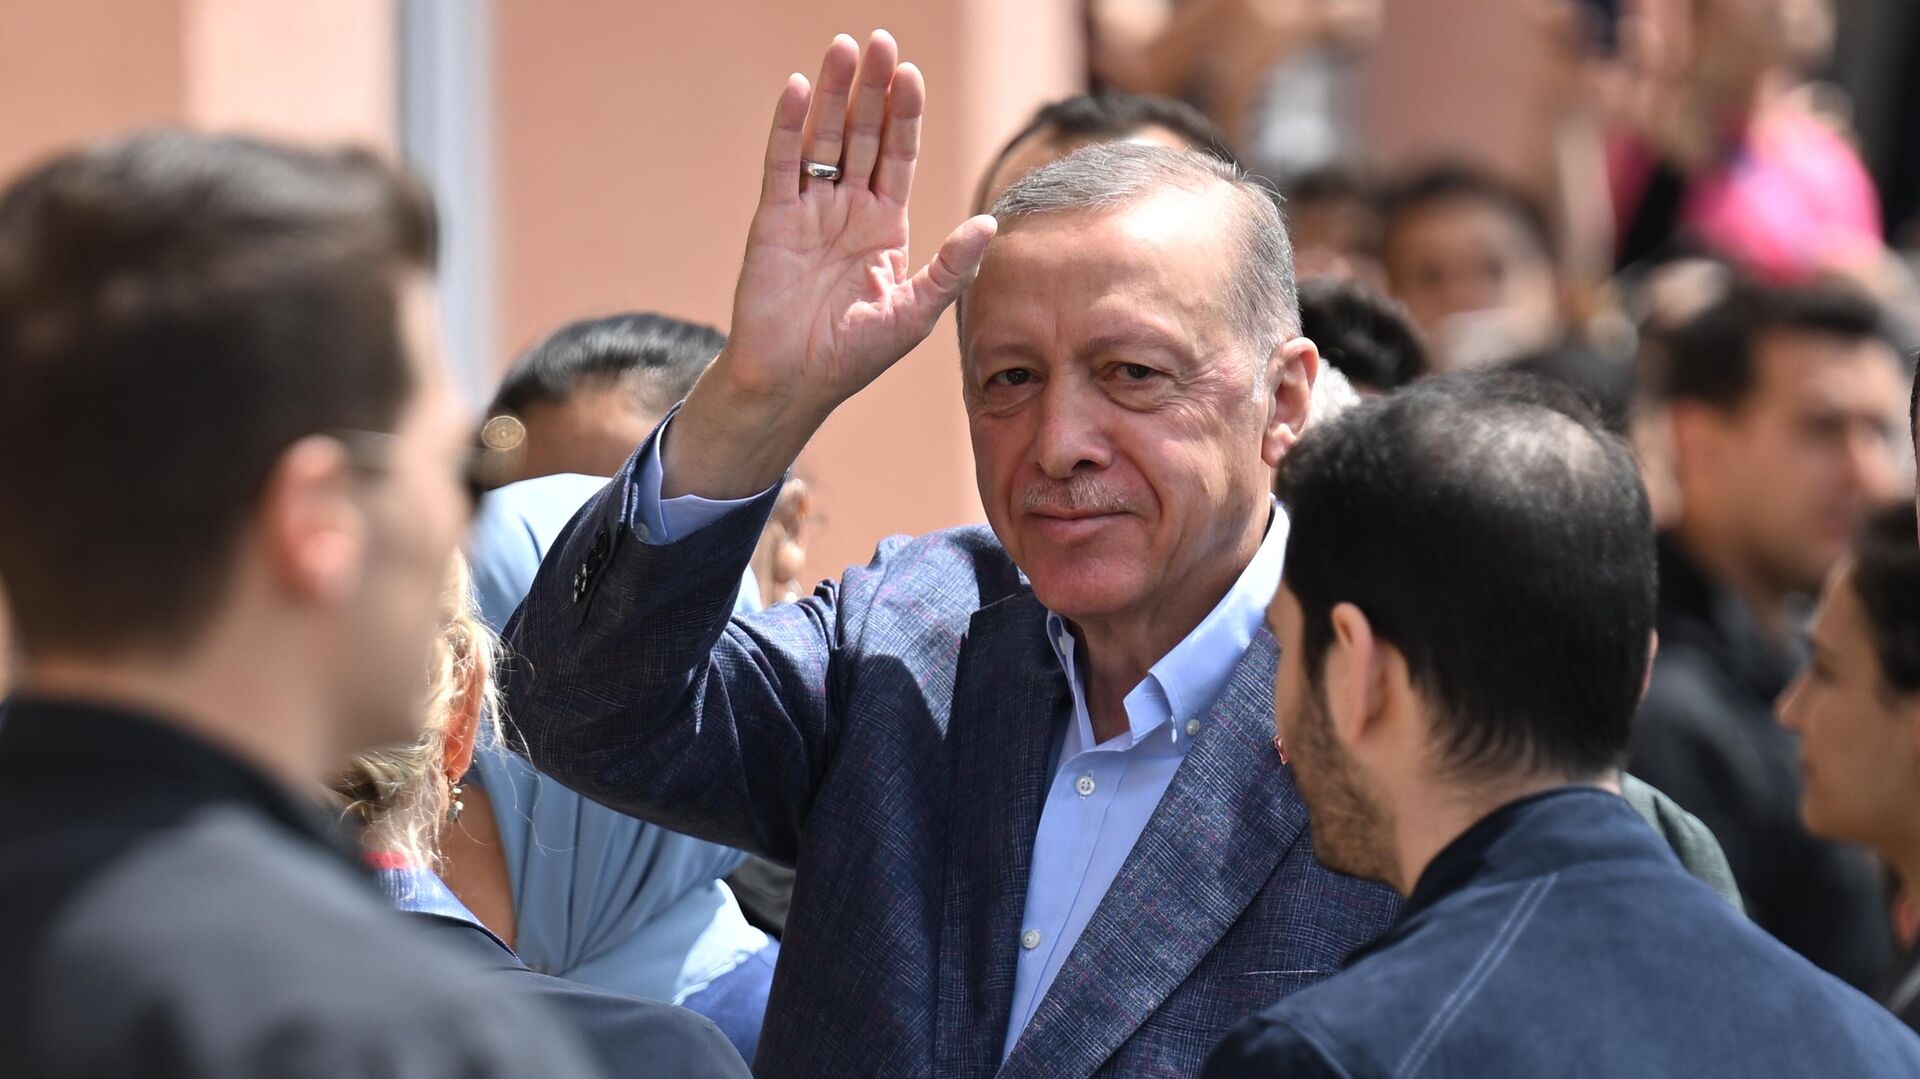 Выборы в Турции: Эрдоган набрал меньше 50% голосов после подсчета 99% бюллетеней